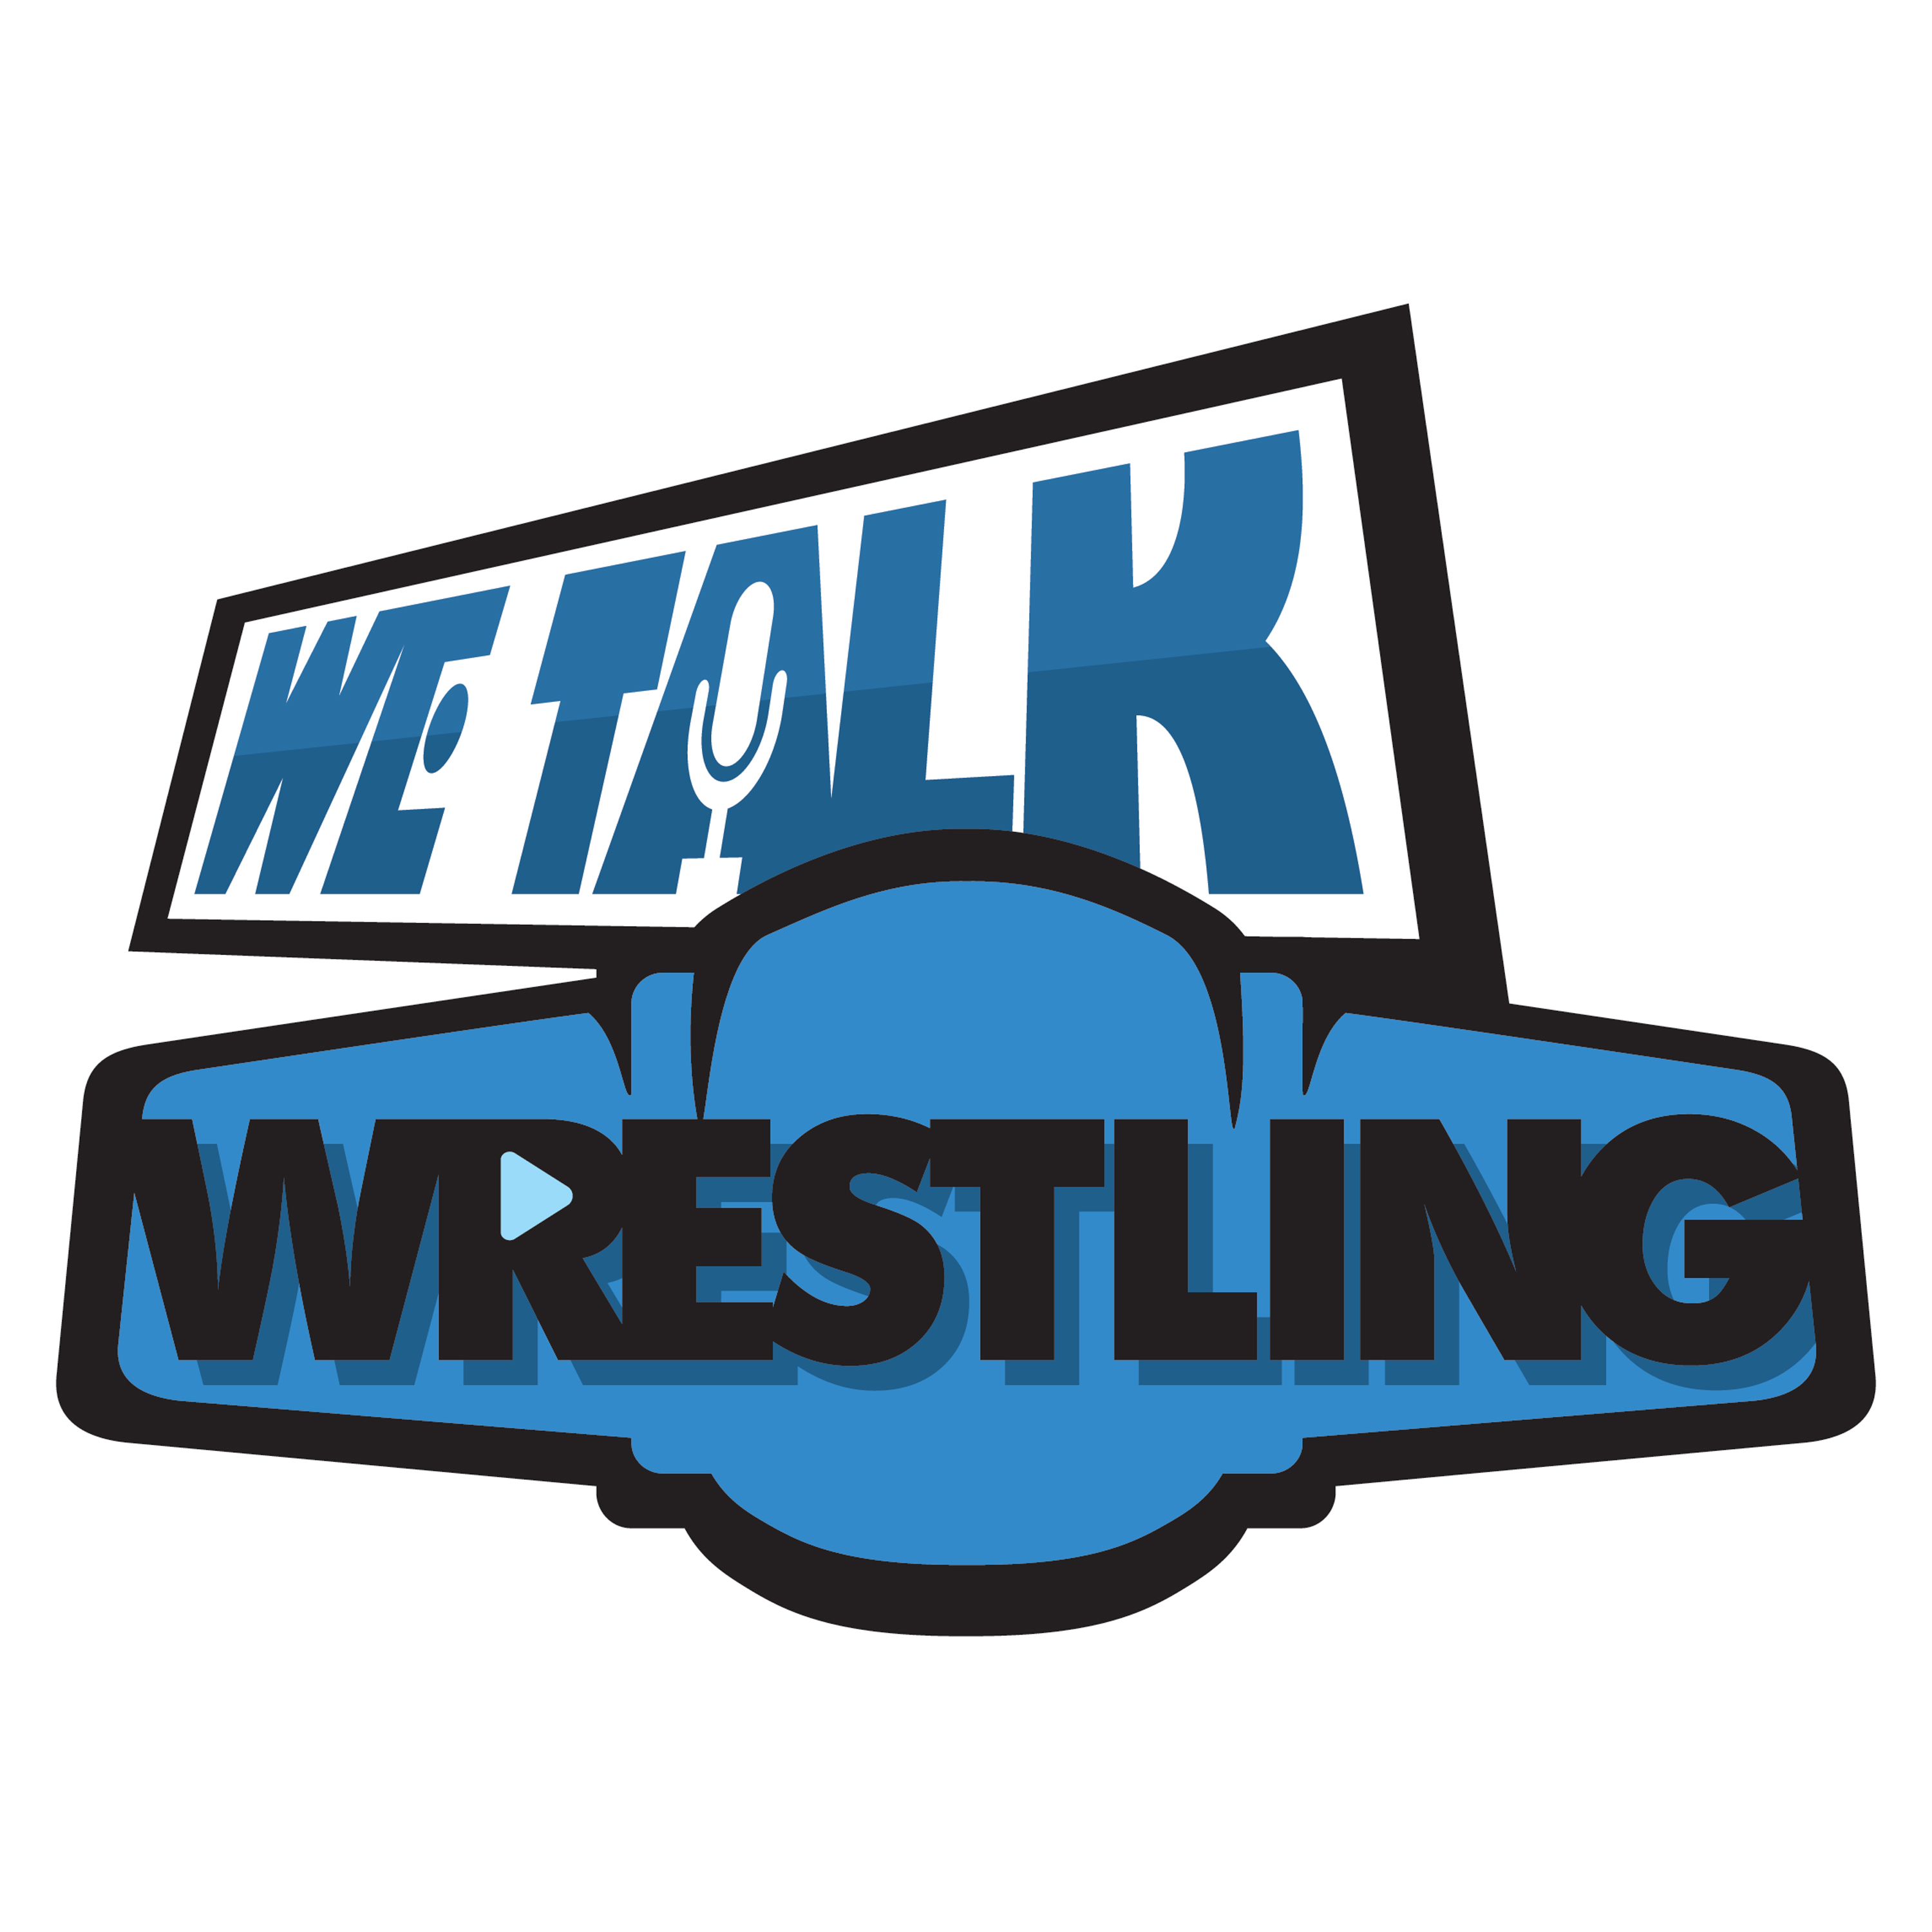 We Talk Wrestling